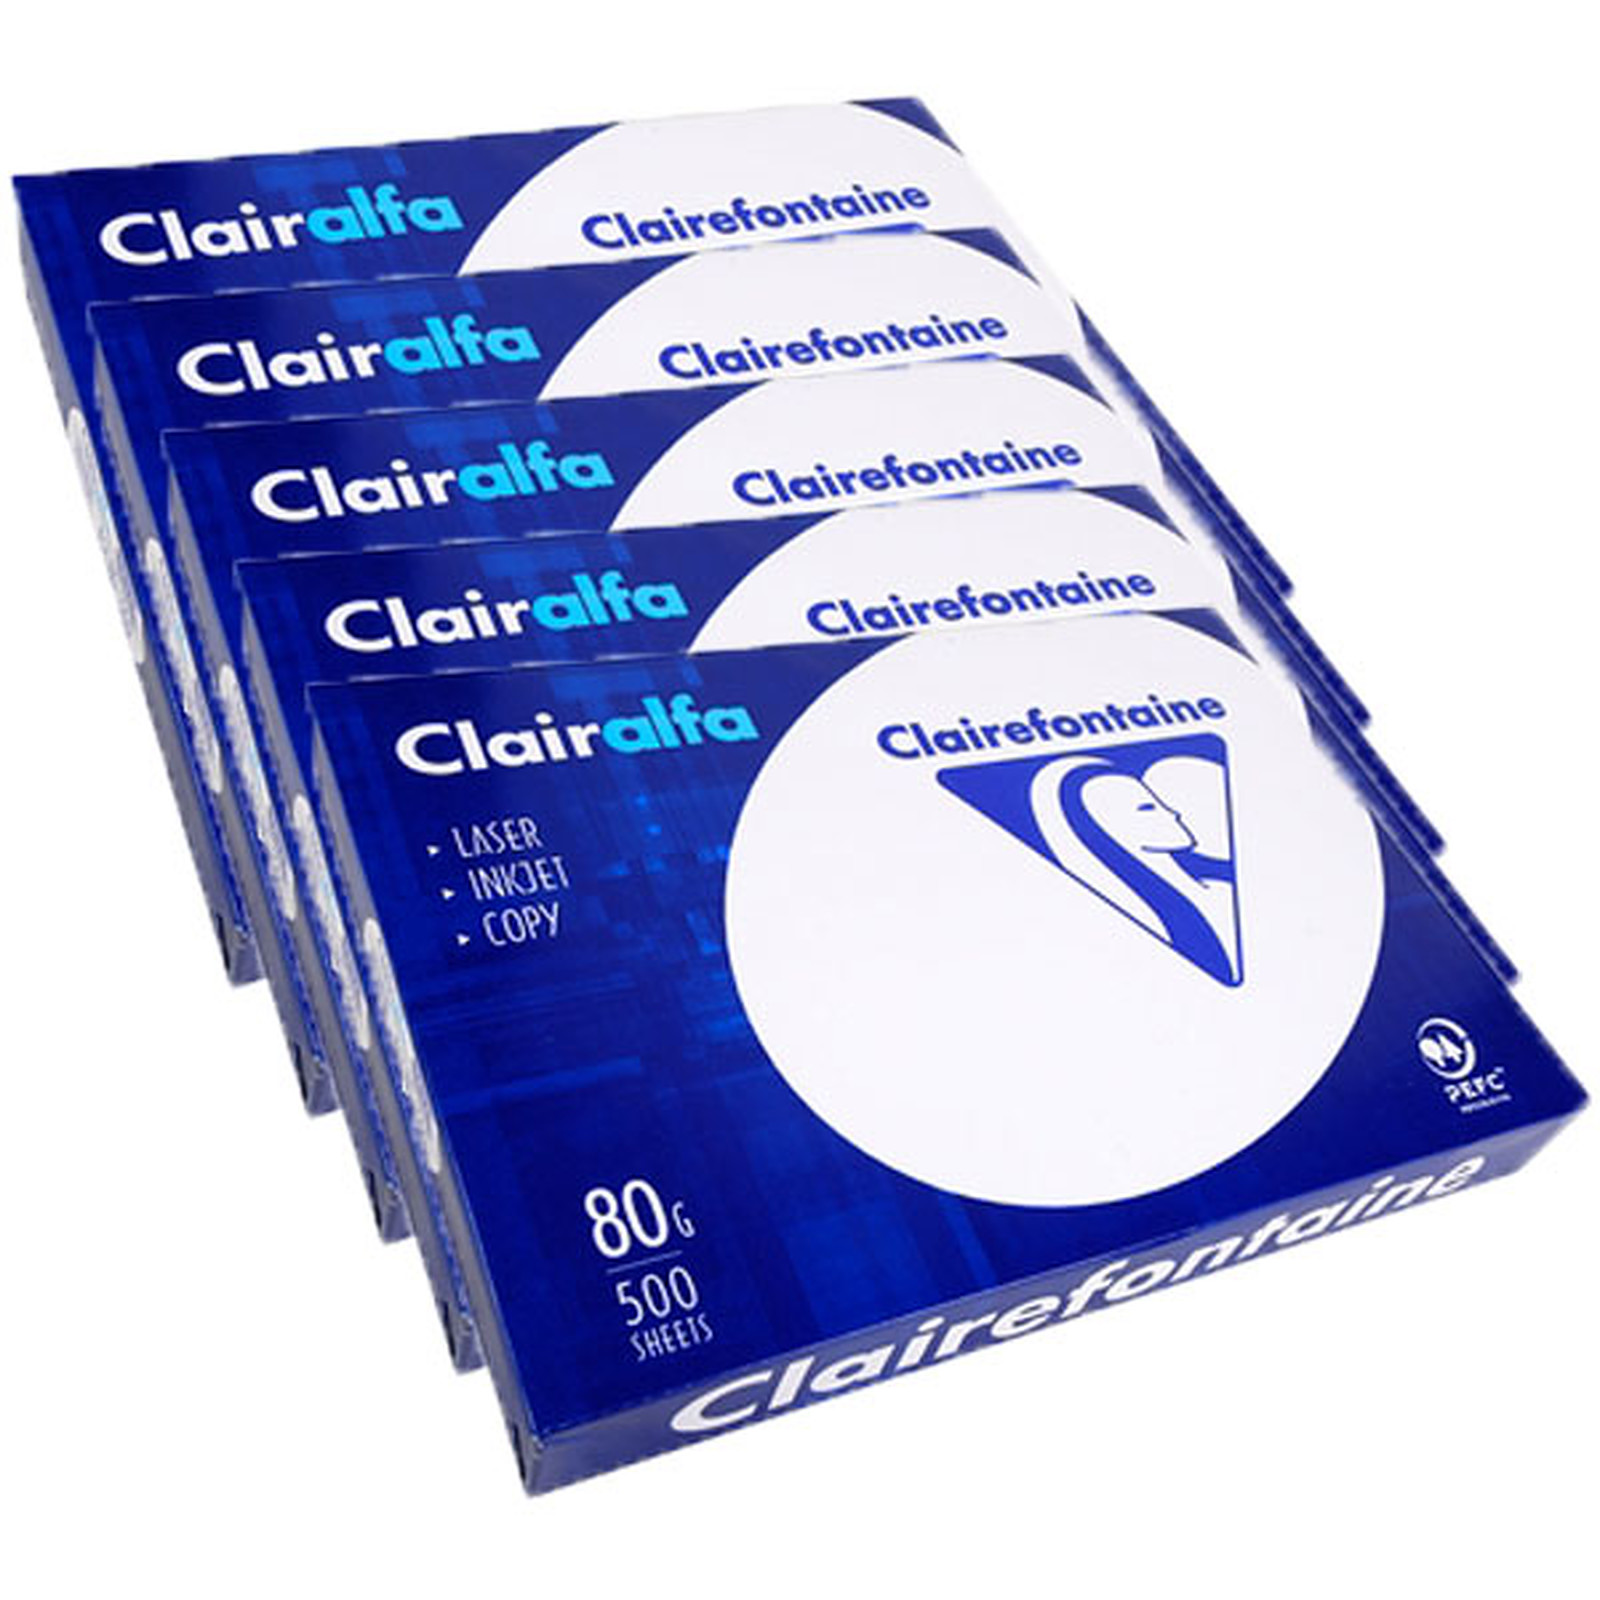 Clairefontaine Clairalfa ramette 500 feuilles A3 80g Blanc X5 - Ramette de papier Clairefontaine